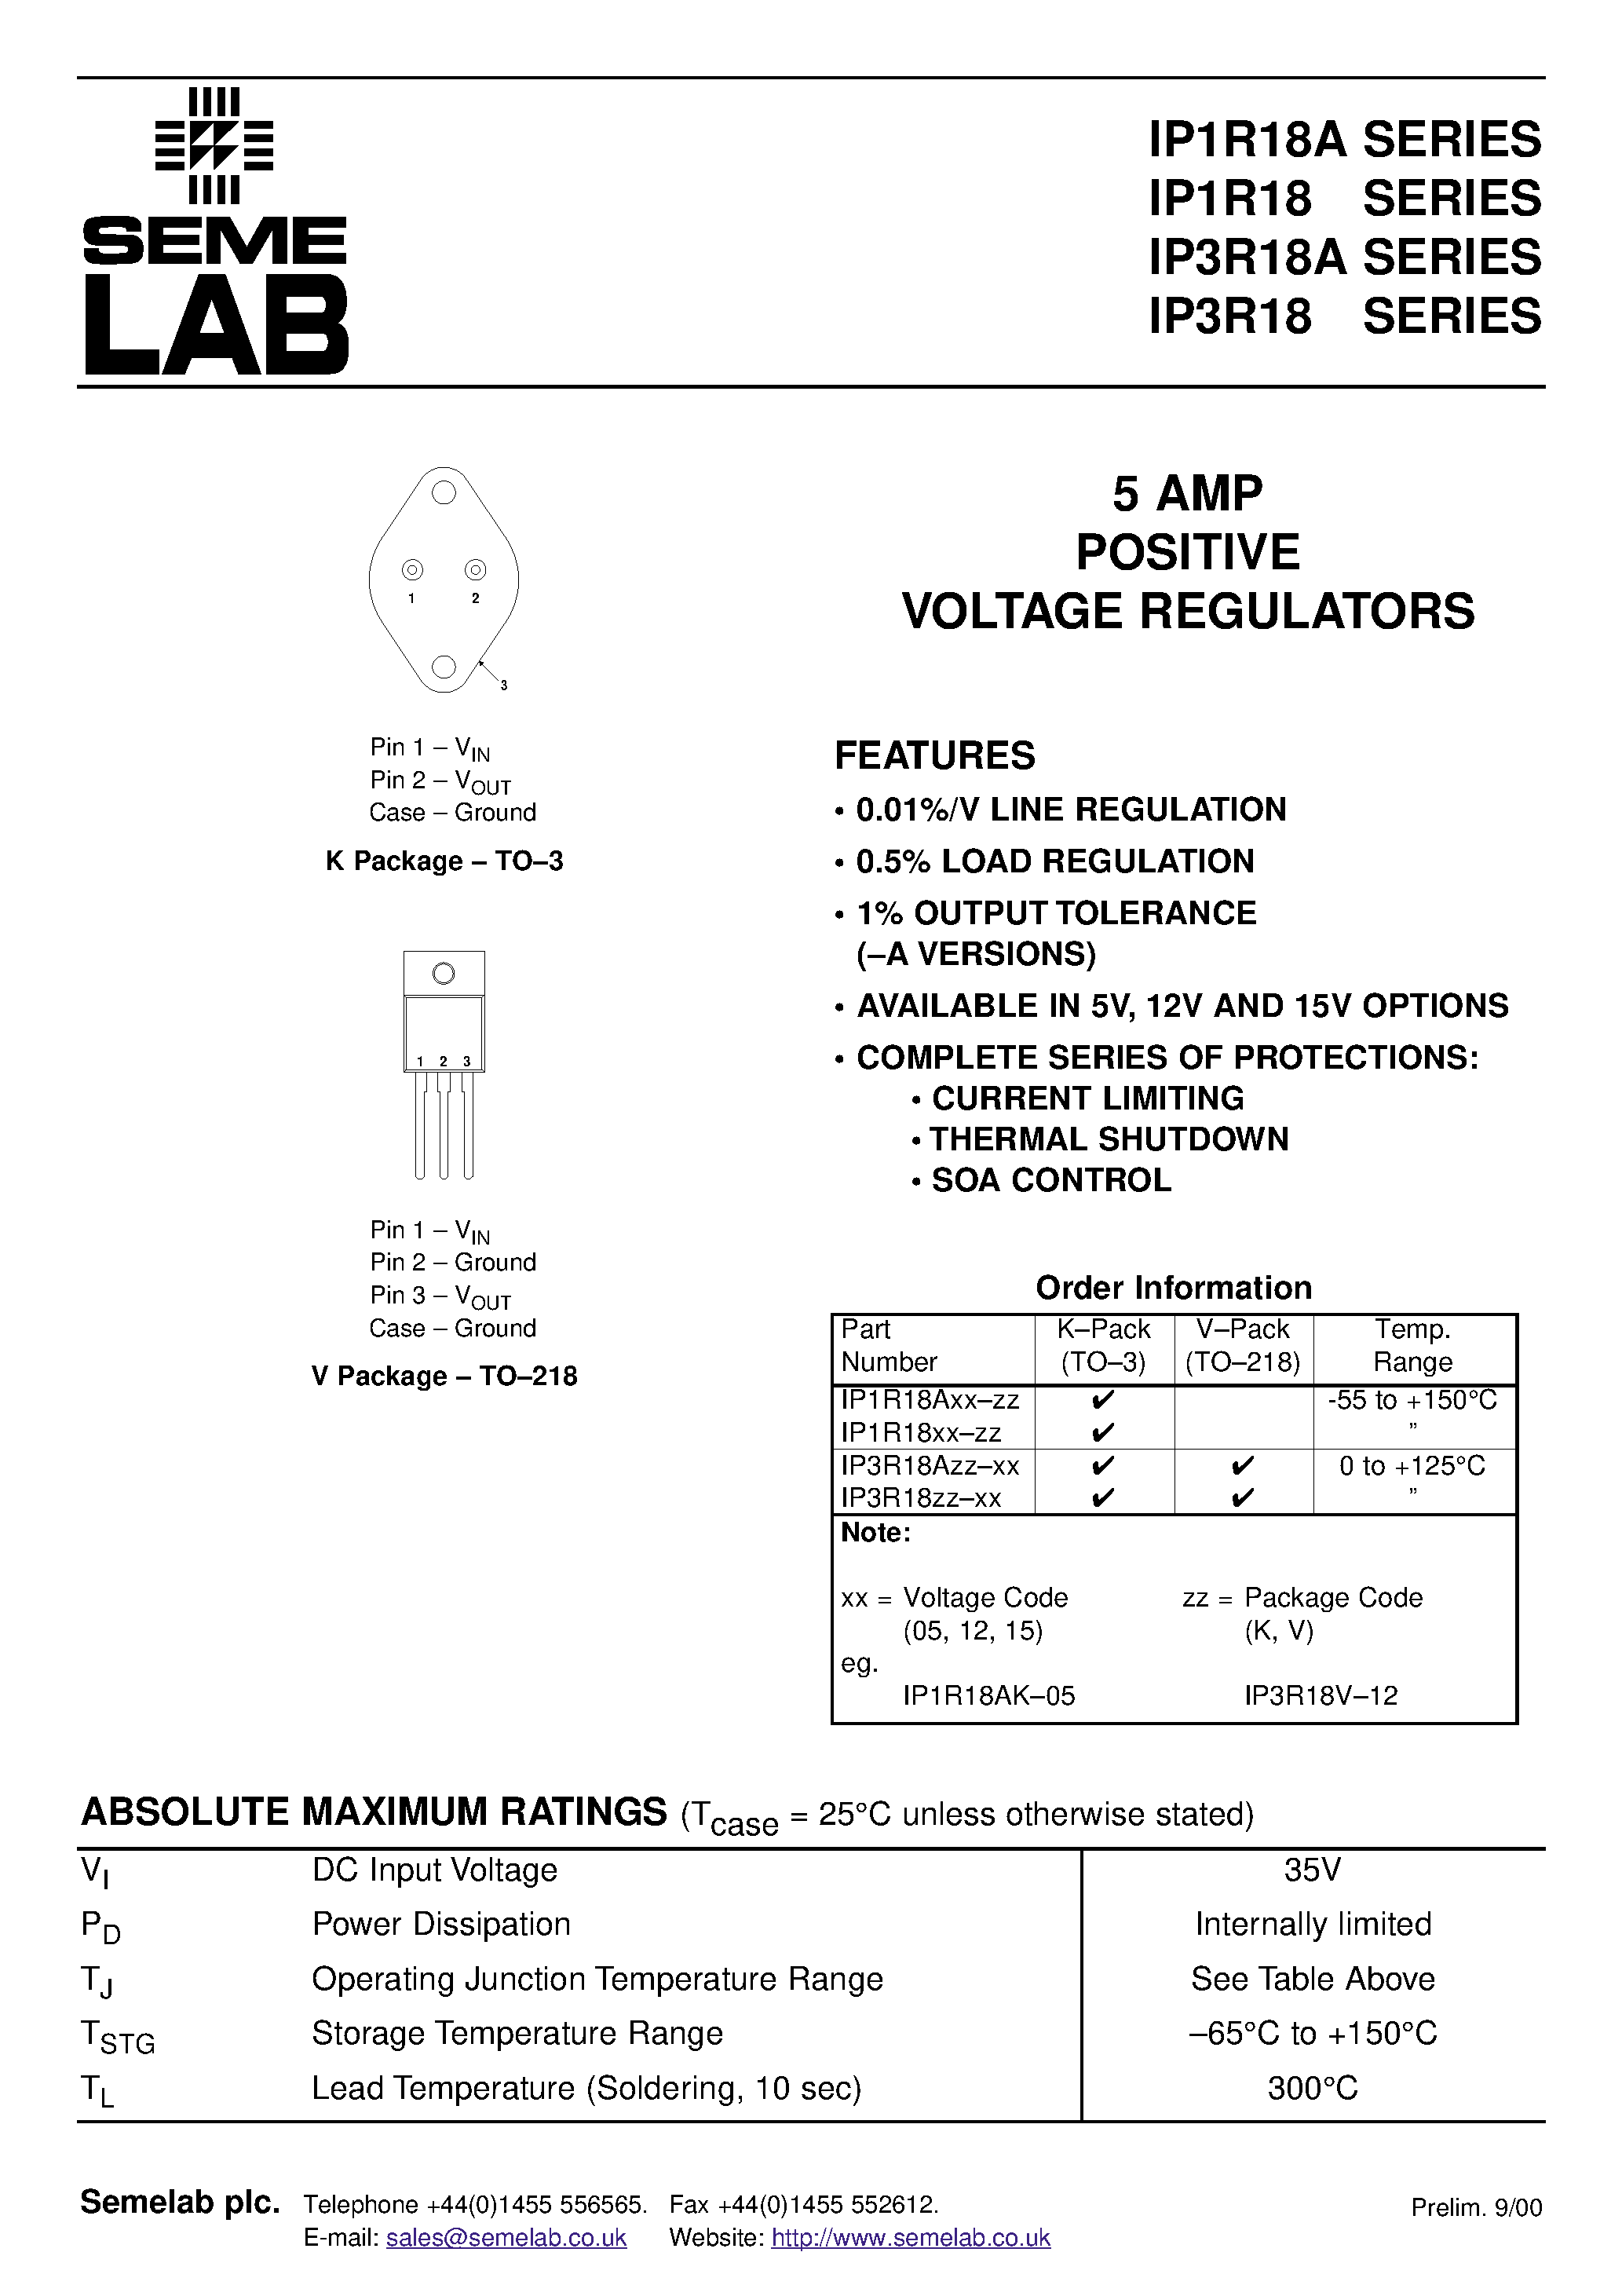 Datasheet IP1R18A12-K - 5 AMP POSITIVE VOLTAGE REGULATORS page 1